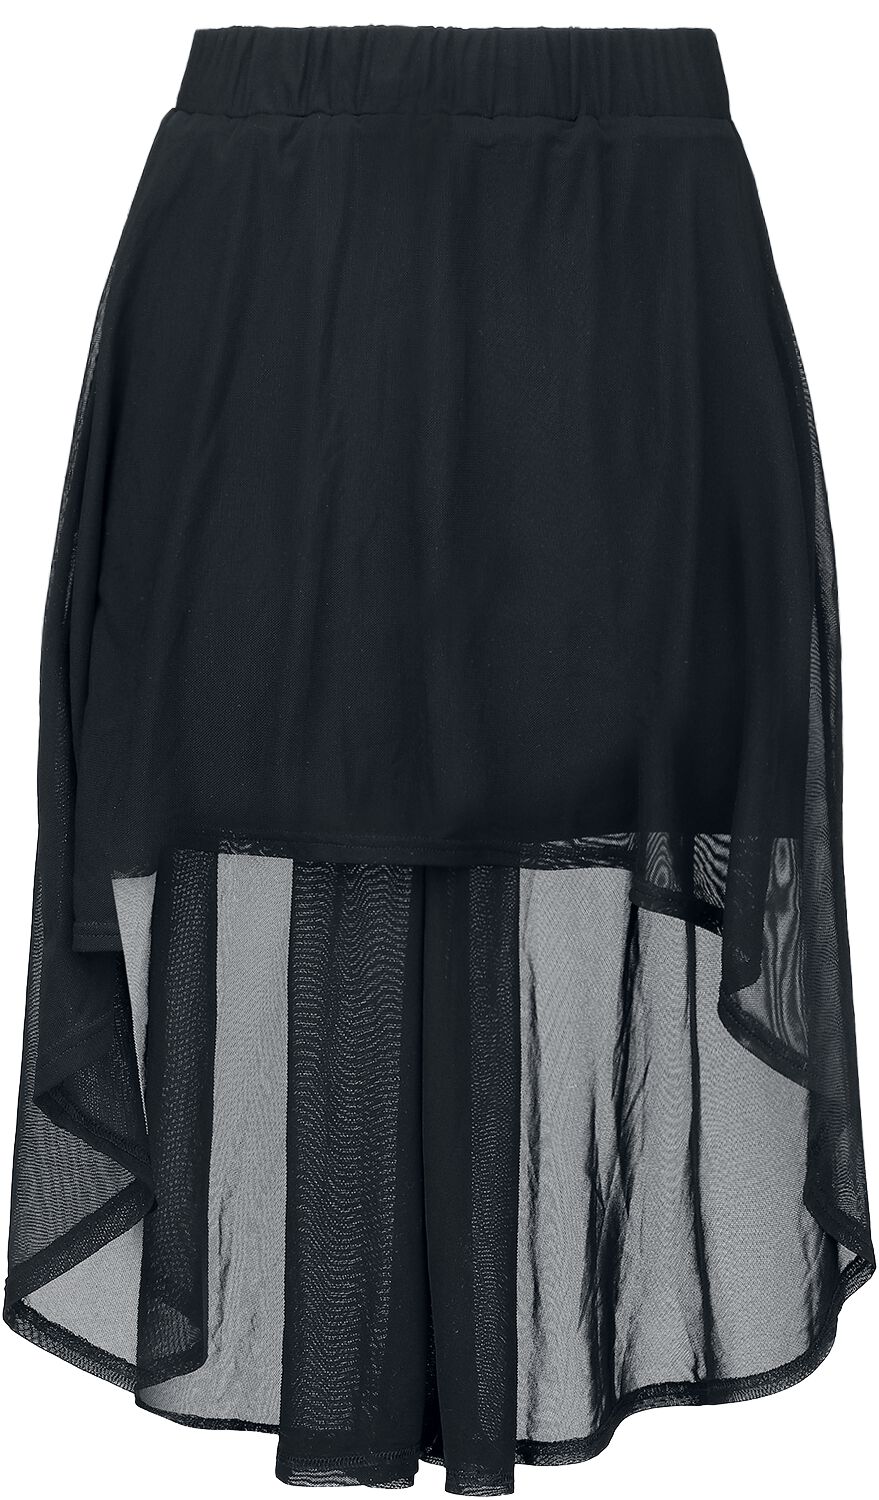 Gothicana by EMP - Gothic Kurzer Rock - Skirt With Transparent Details - S bis XXL - für Damen - Größe S - schwarz